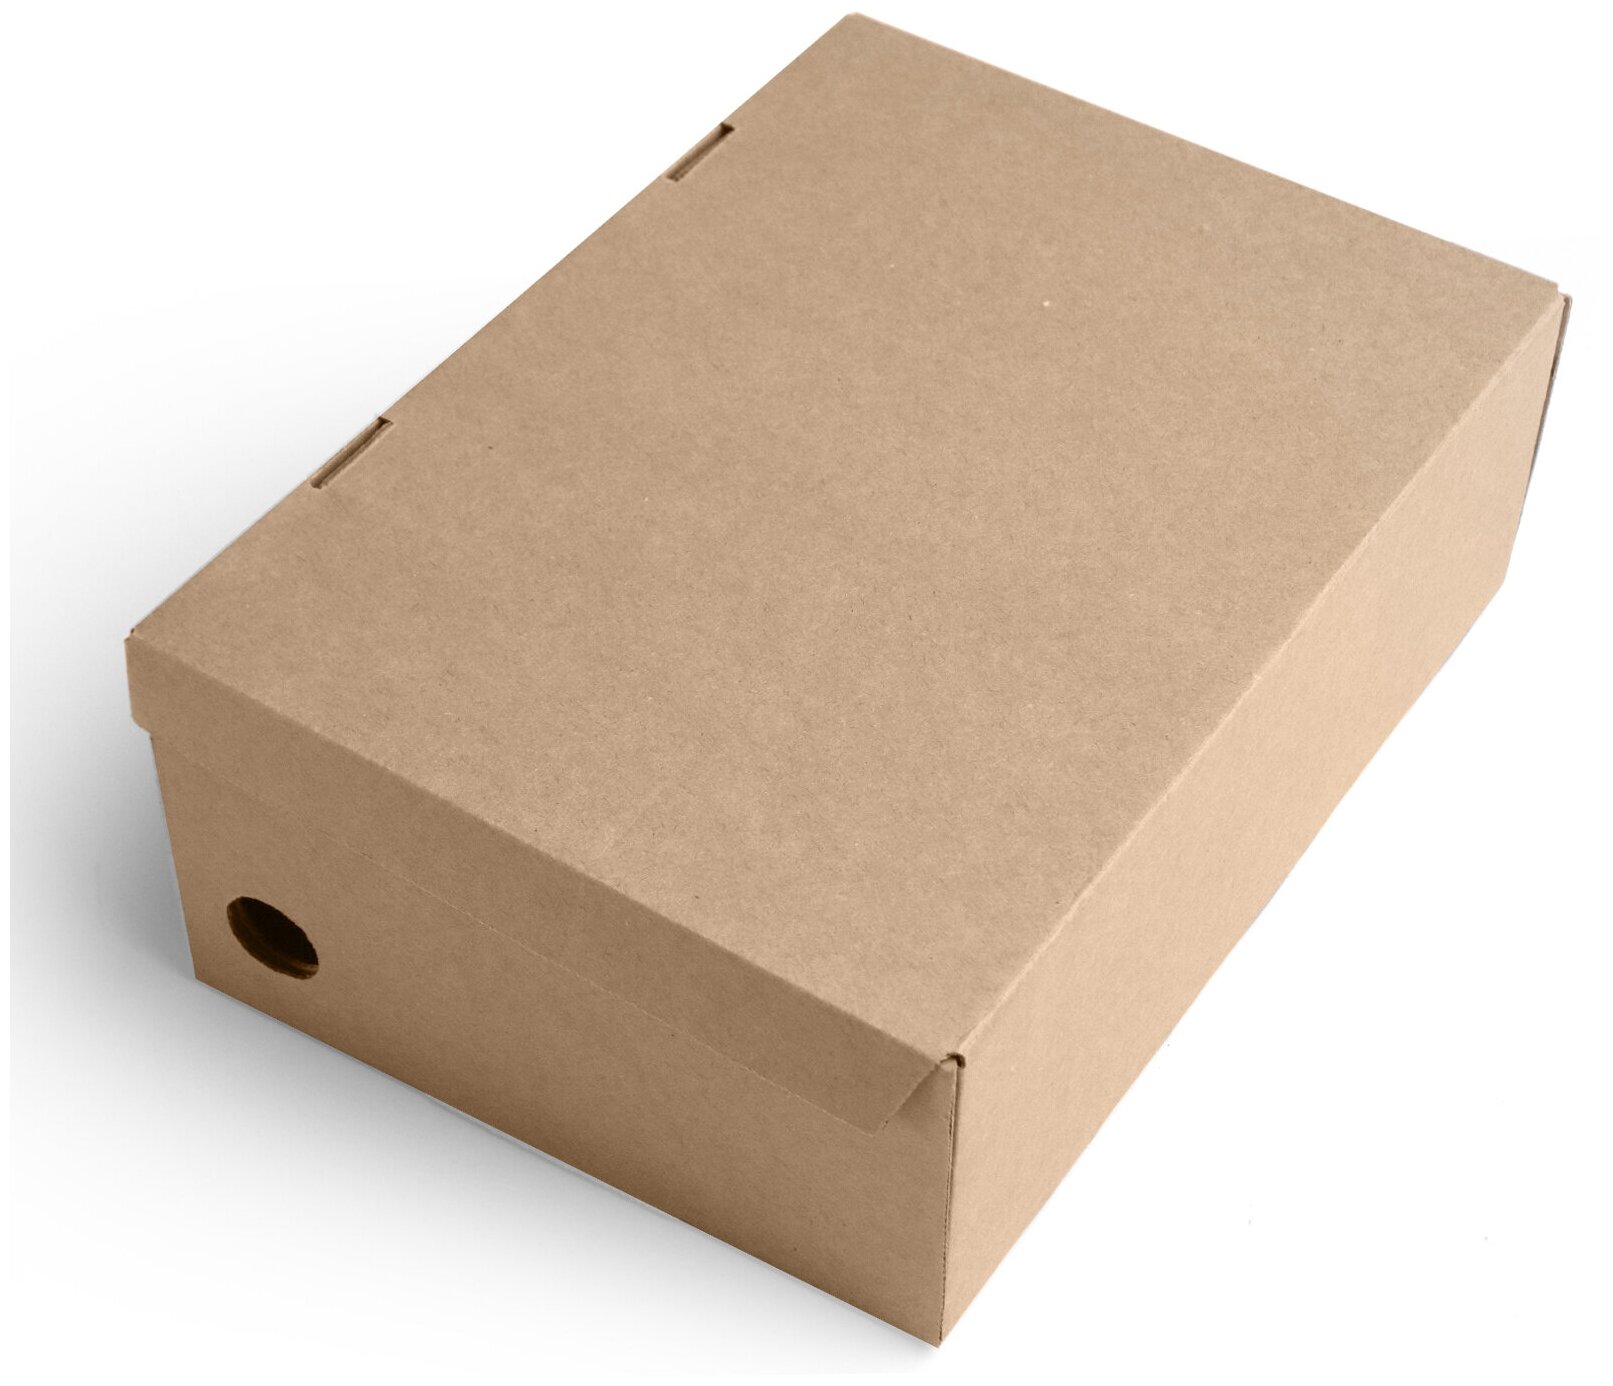 Коробка для хранения обуви 30х20х10 см (Т11 Е) - 3 шт. Картонный органайзер 300х200х100 мм. - фотография № 3